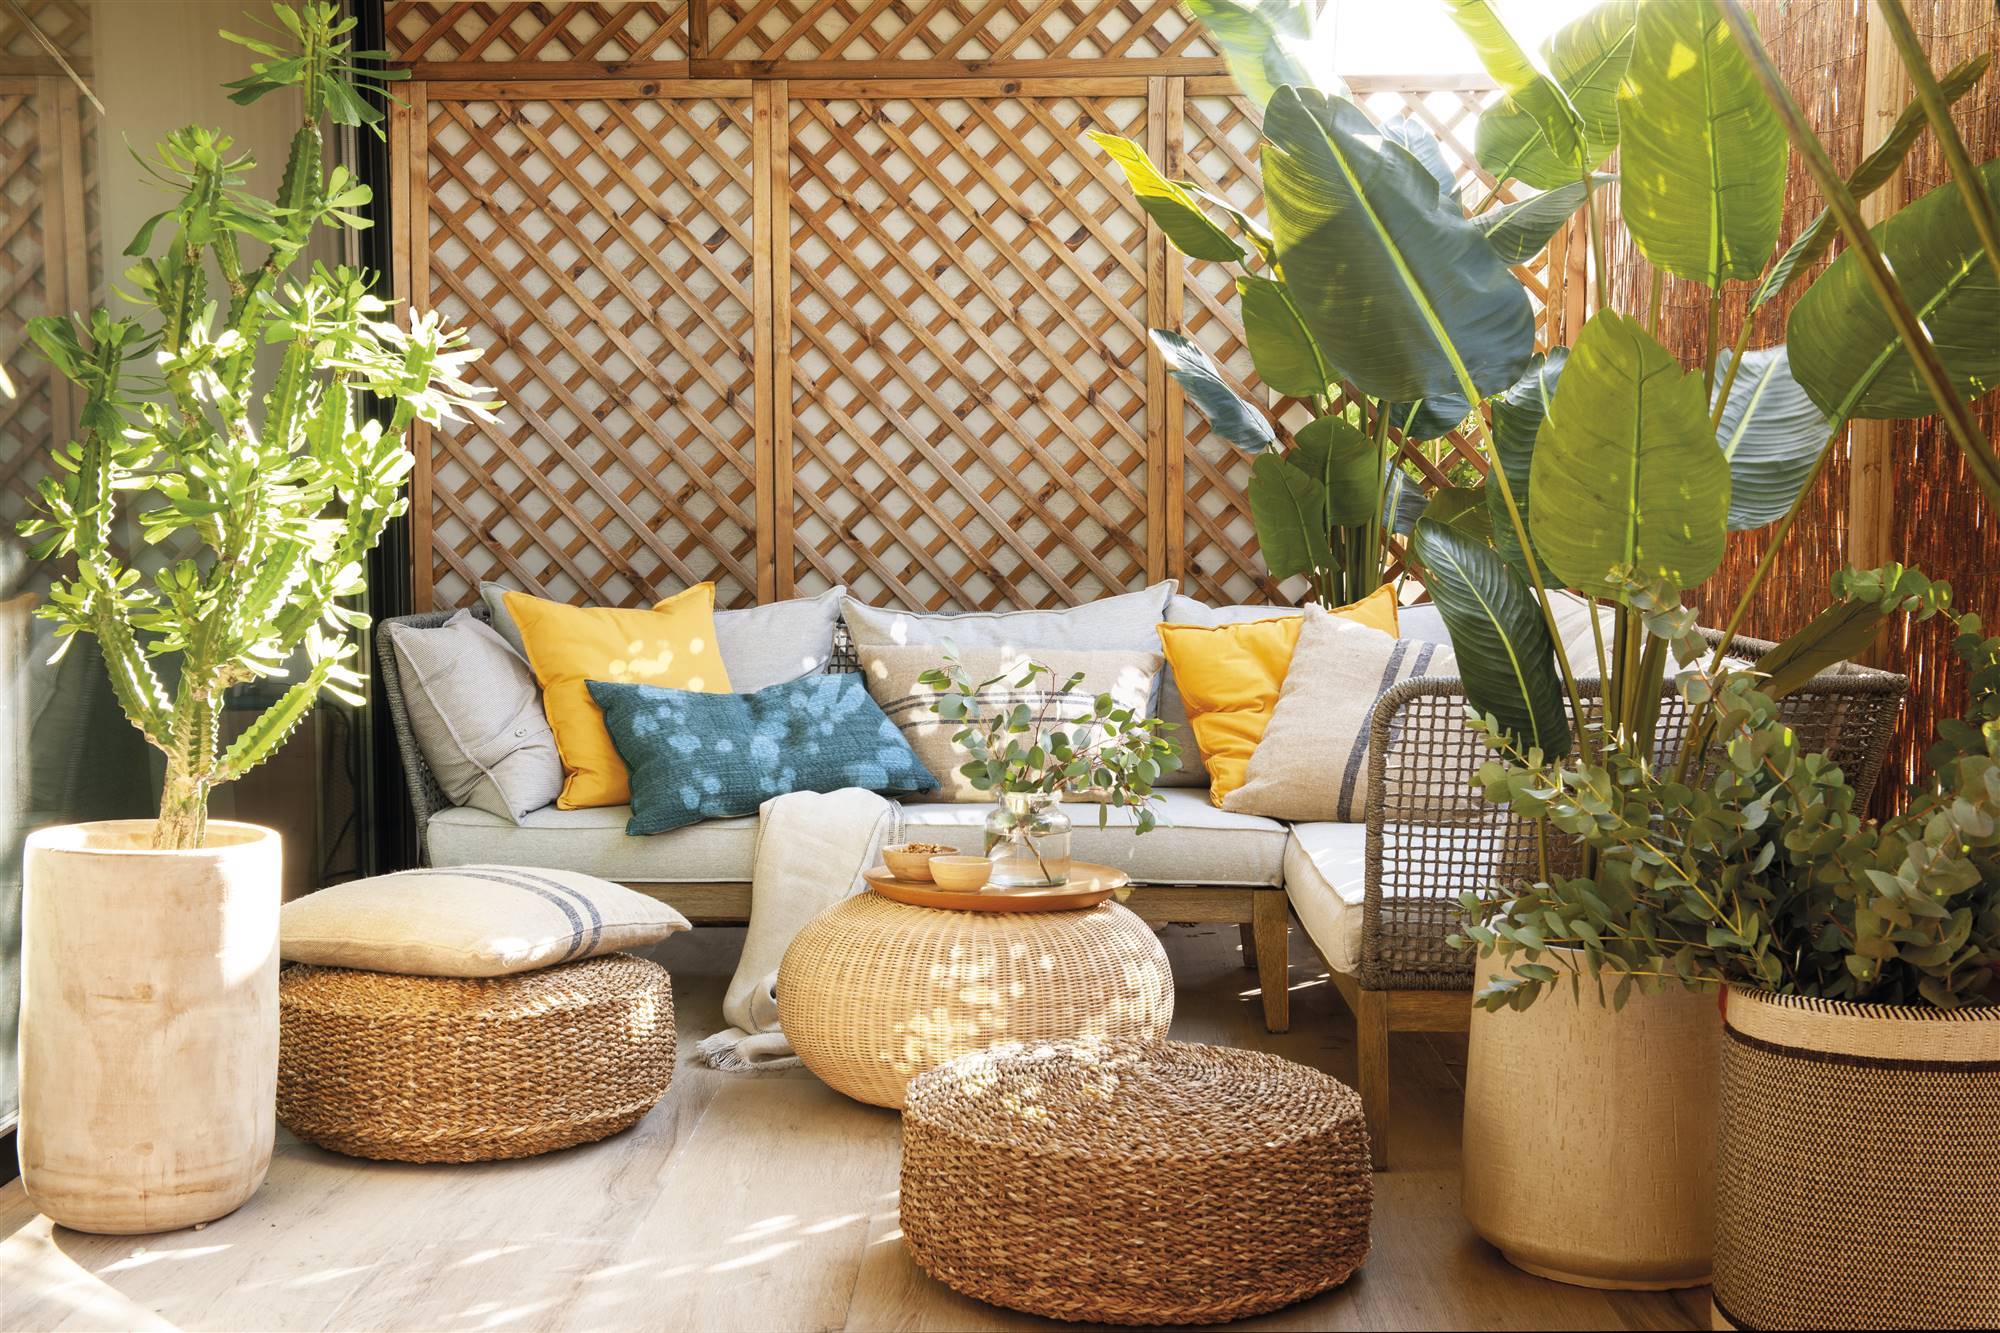 Terraza cuadrada con muebles de fibras y plantas 00521364